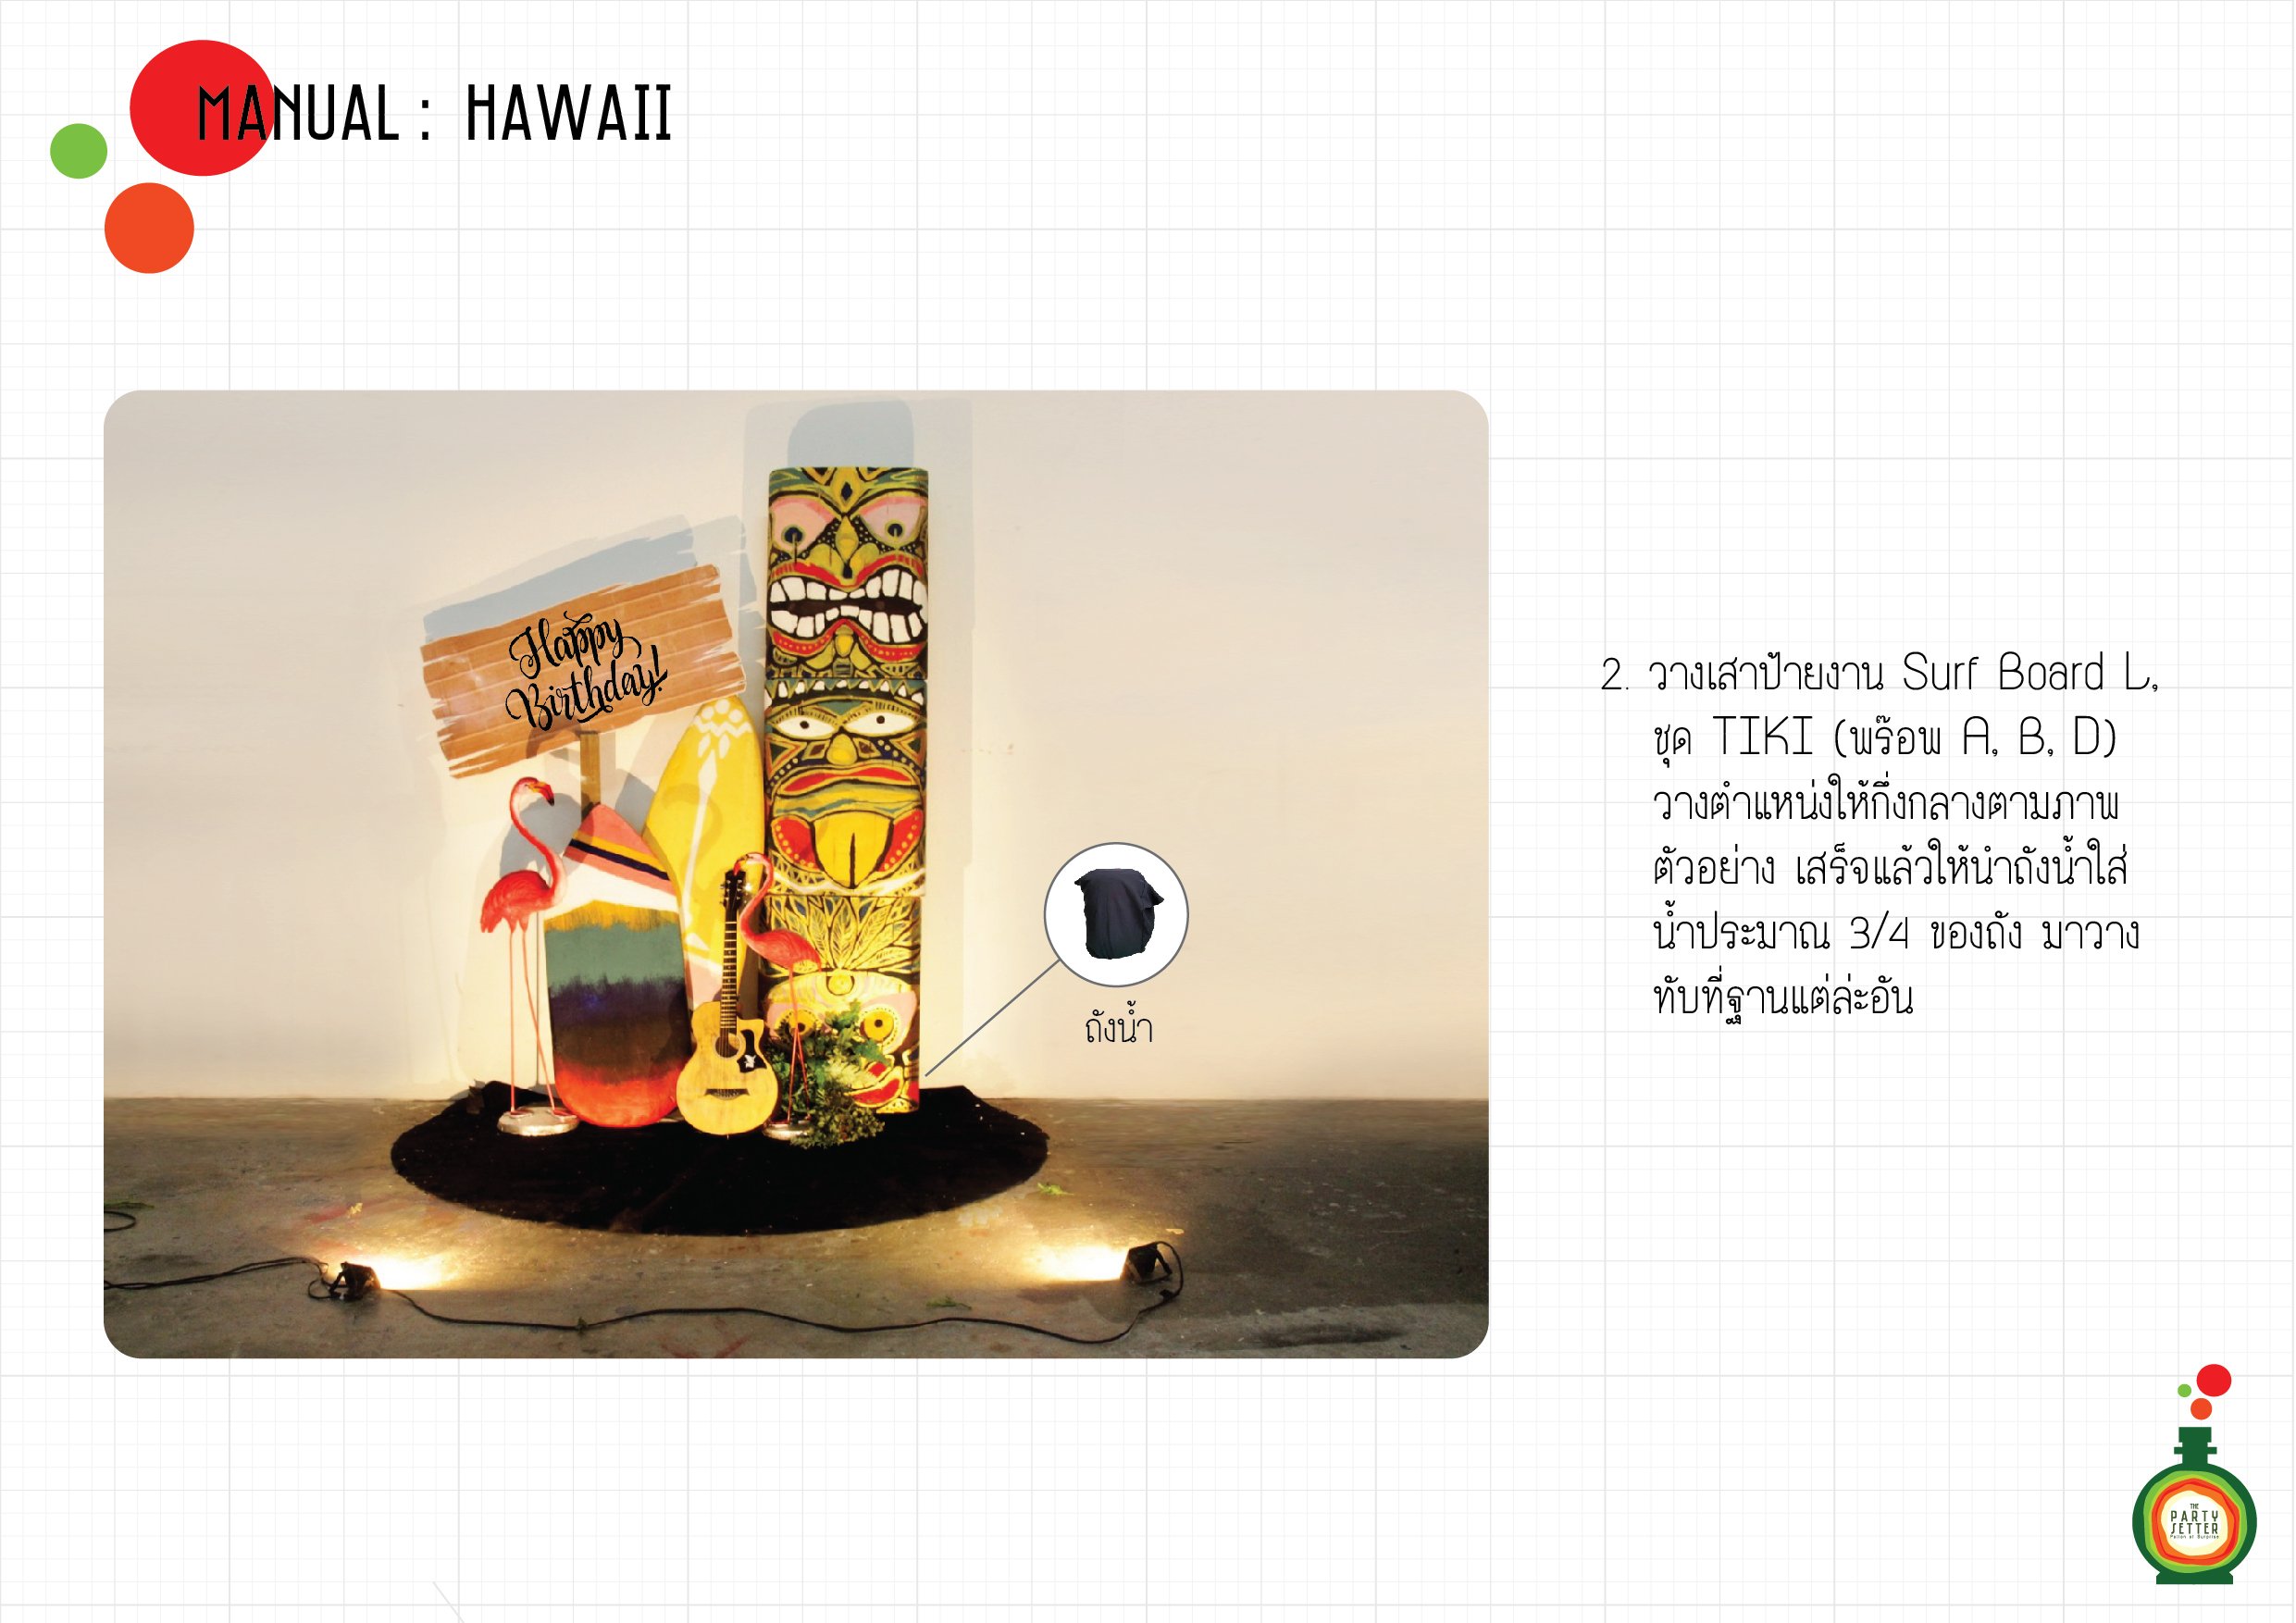 Manual_Hawaii-4-02-01.jpg